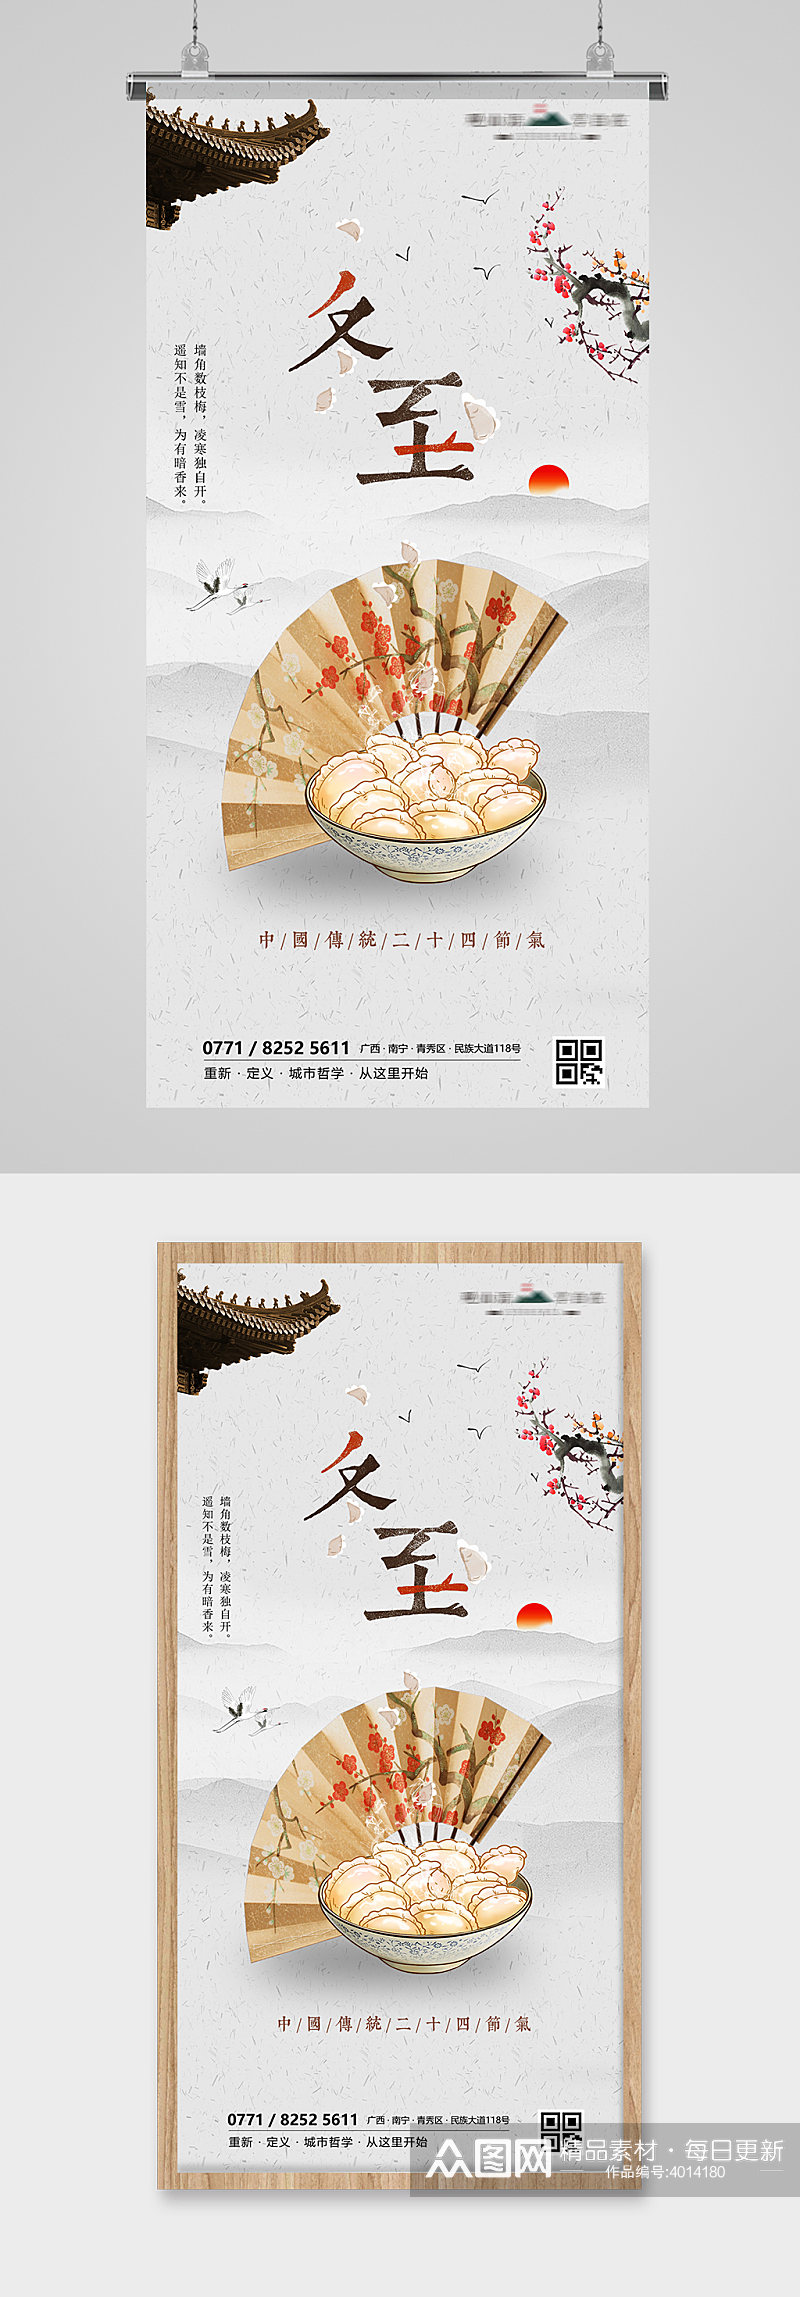 冬至节气饺子插画节日海报素材